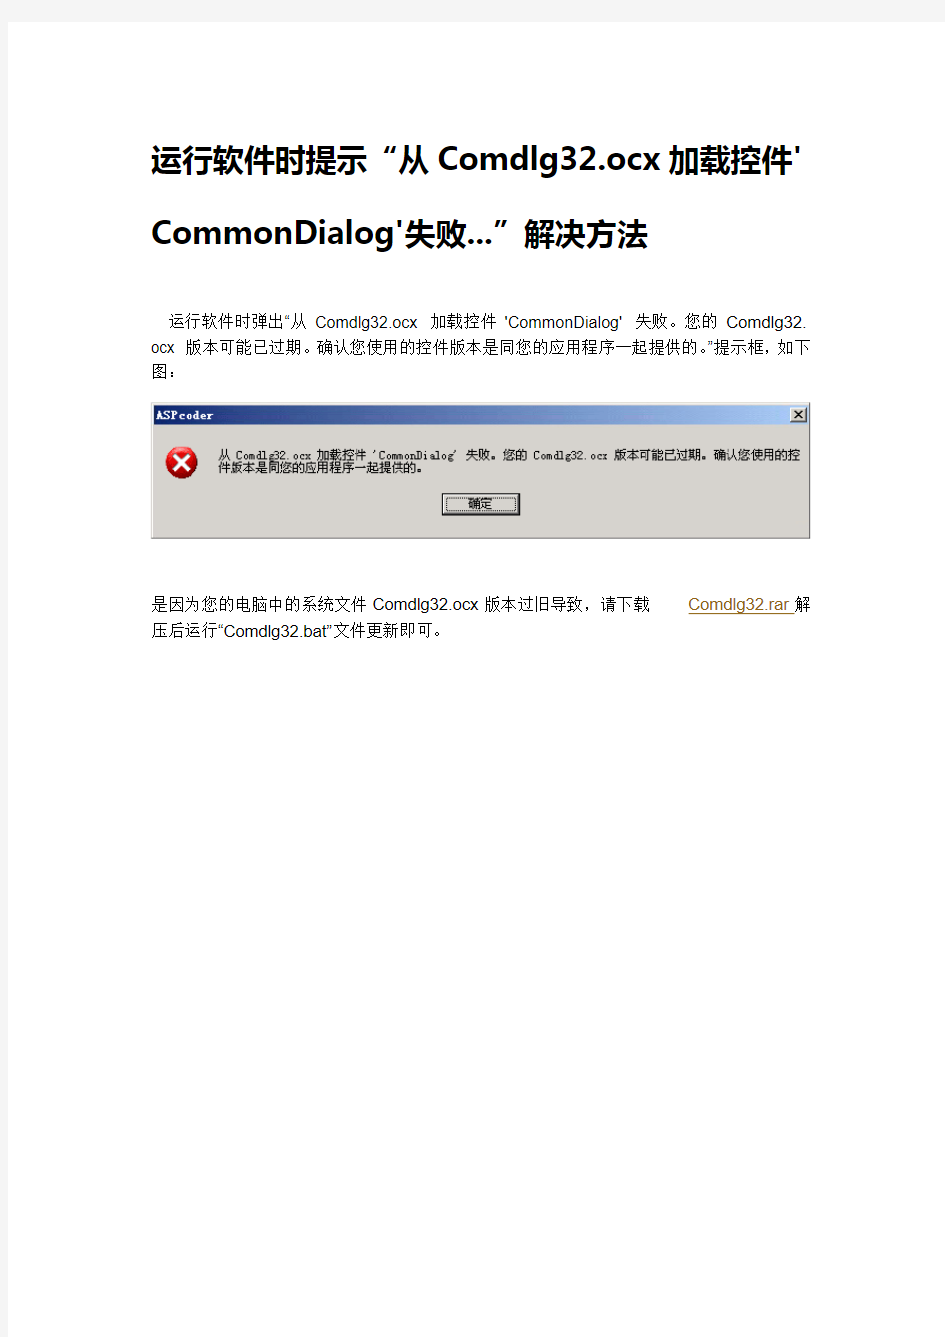 运行软件时提示“从Comdlg32.ocx加载控件'CommonDialog'失败...”解决方法